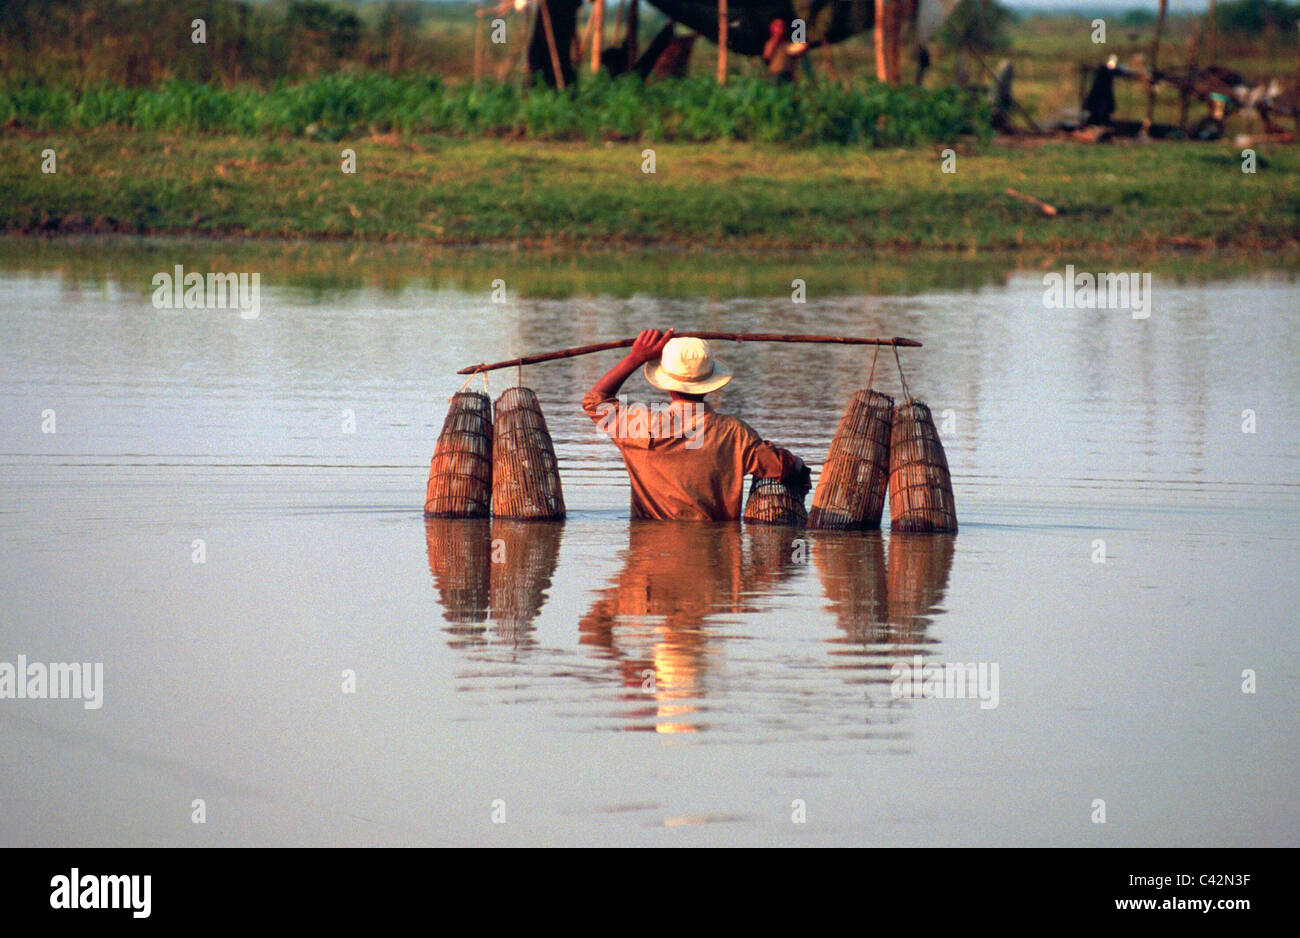 Muchacho camboyano sentar las cestas para atrapar peces del lago, distrito de Battambang, Camboya Foto de stock